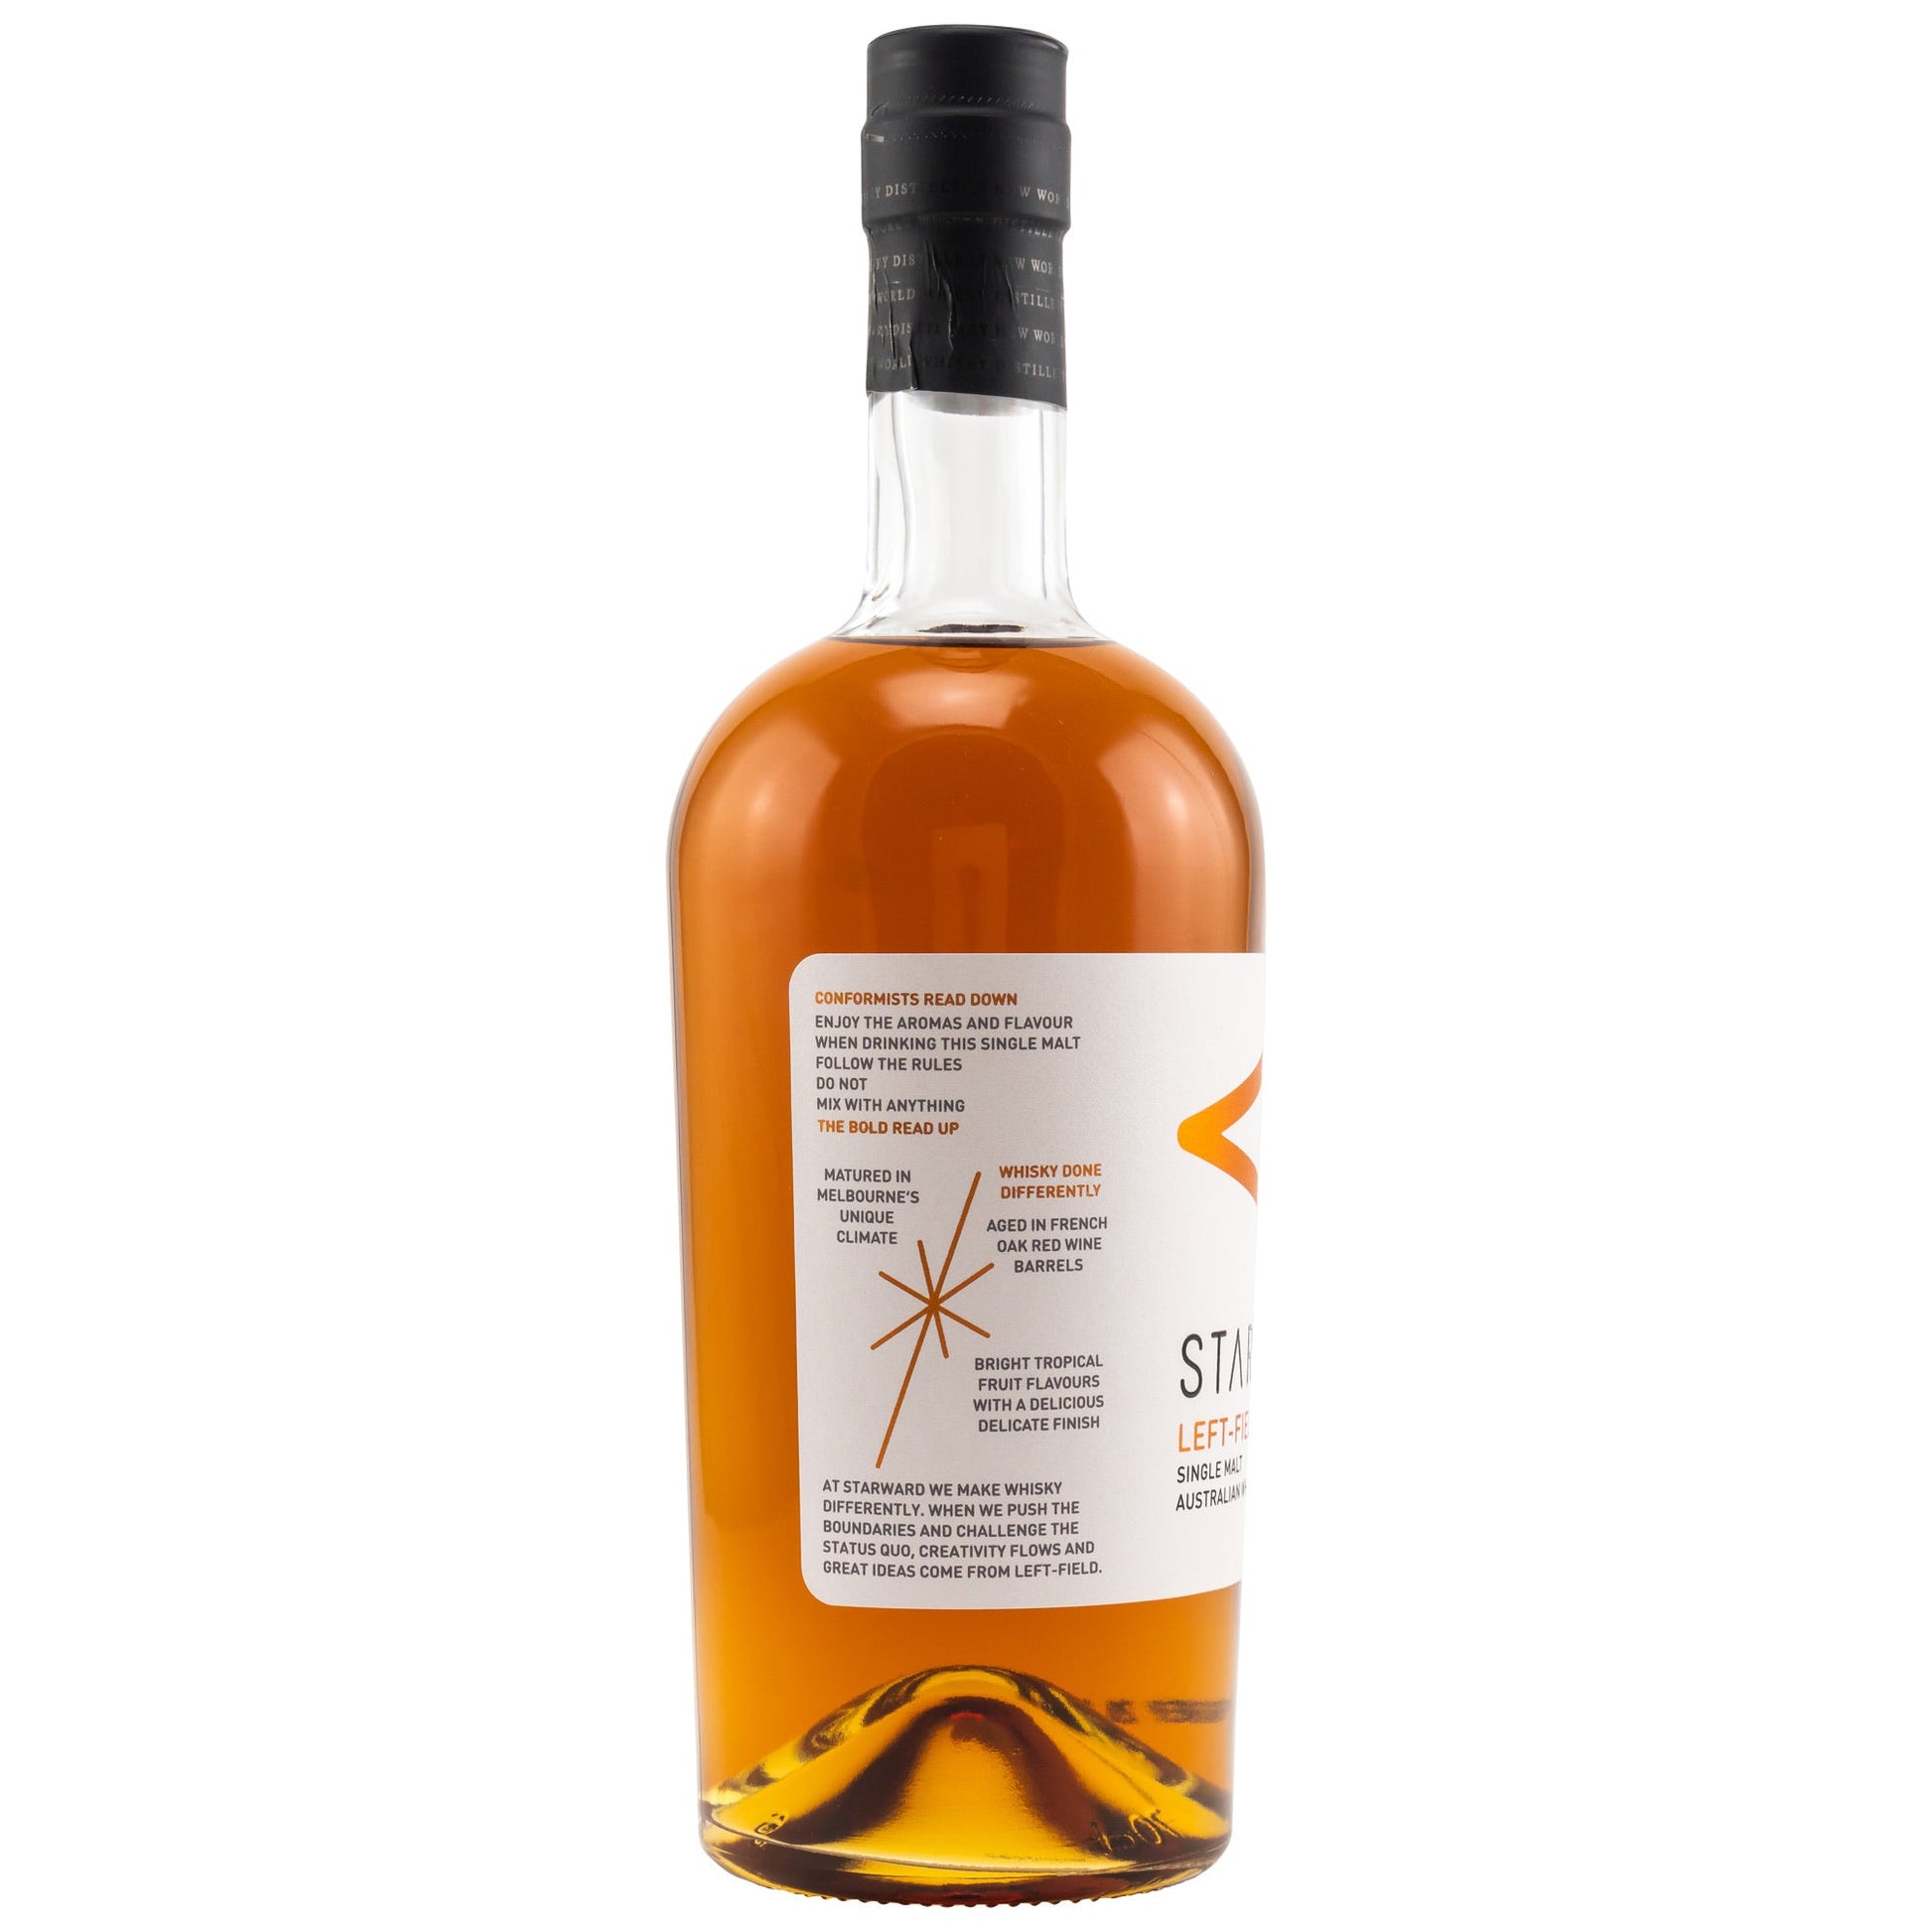 Starward | Left-Field | Single Malt Australian Whisky | 0,7l | 40%GET A BOTTLE